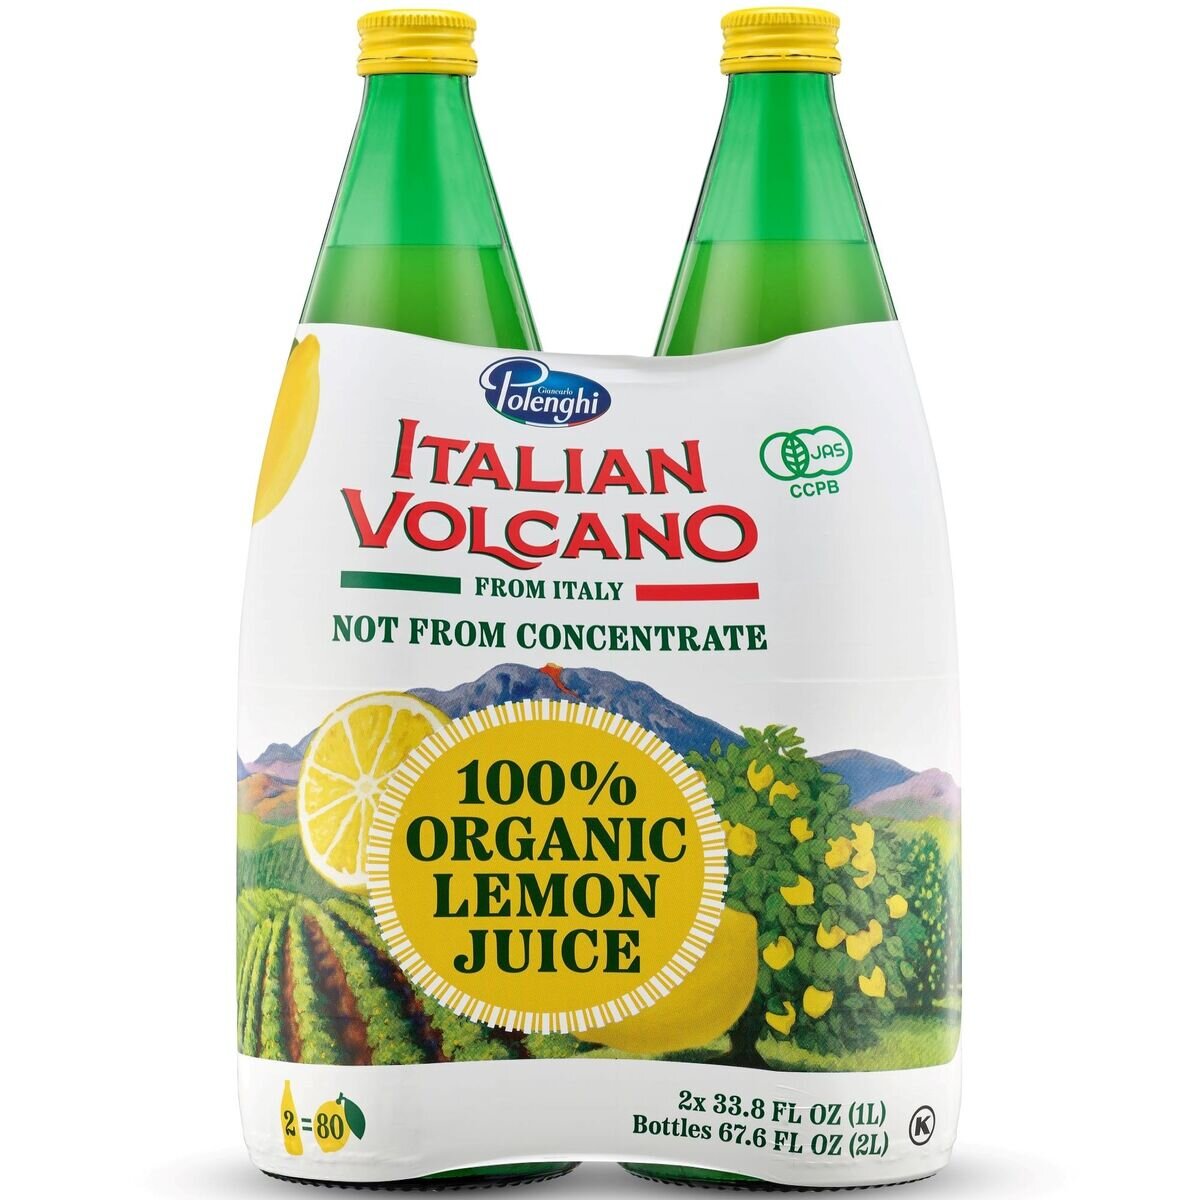 イタリアン ボルケーノ 100% オーガニックレモンジュース 1L x 2本 | Costco Japan